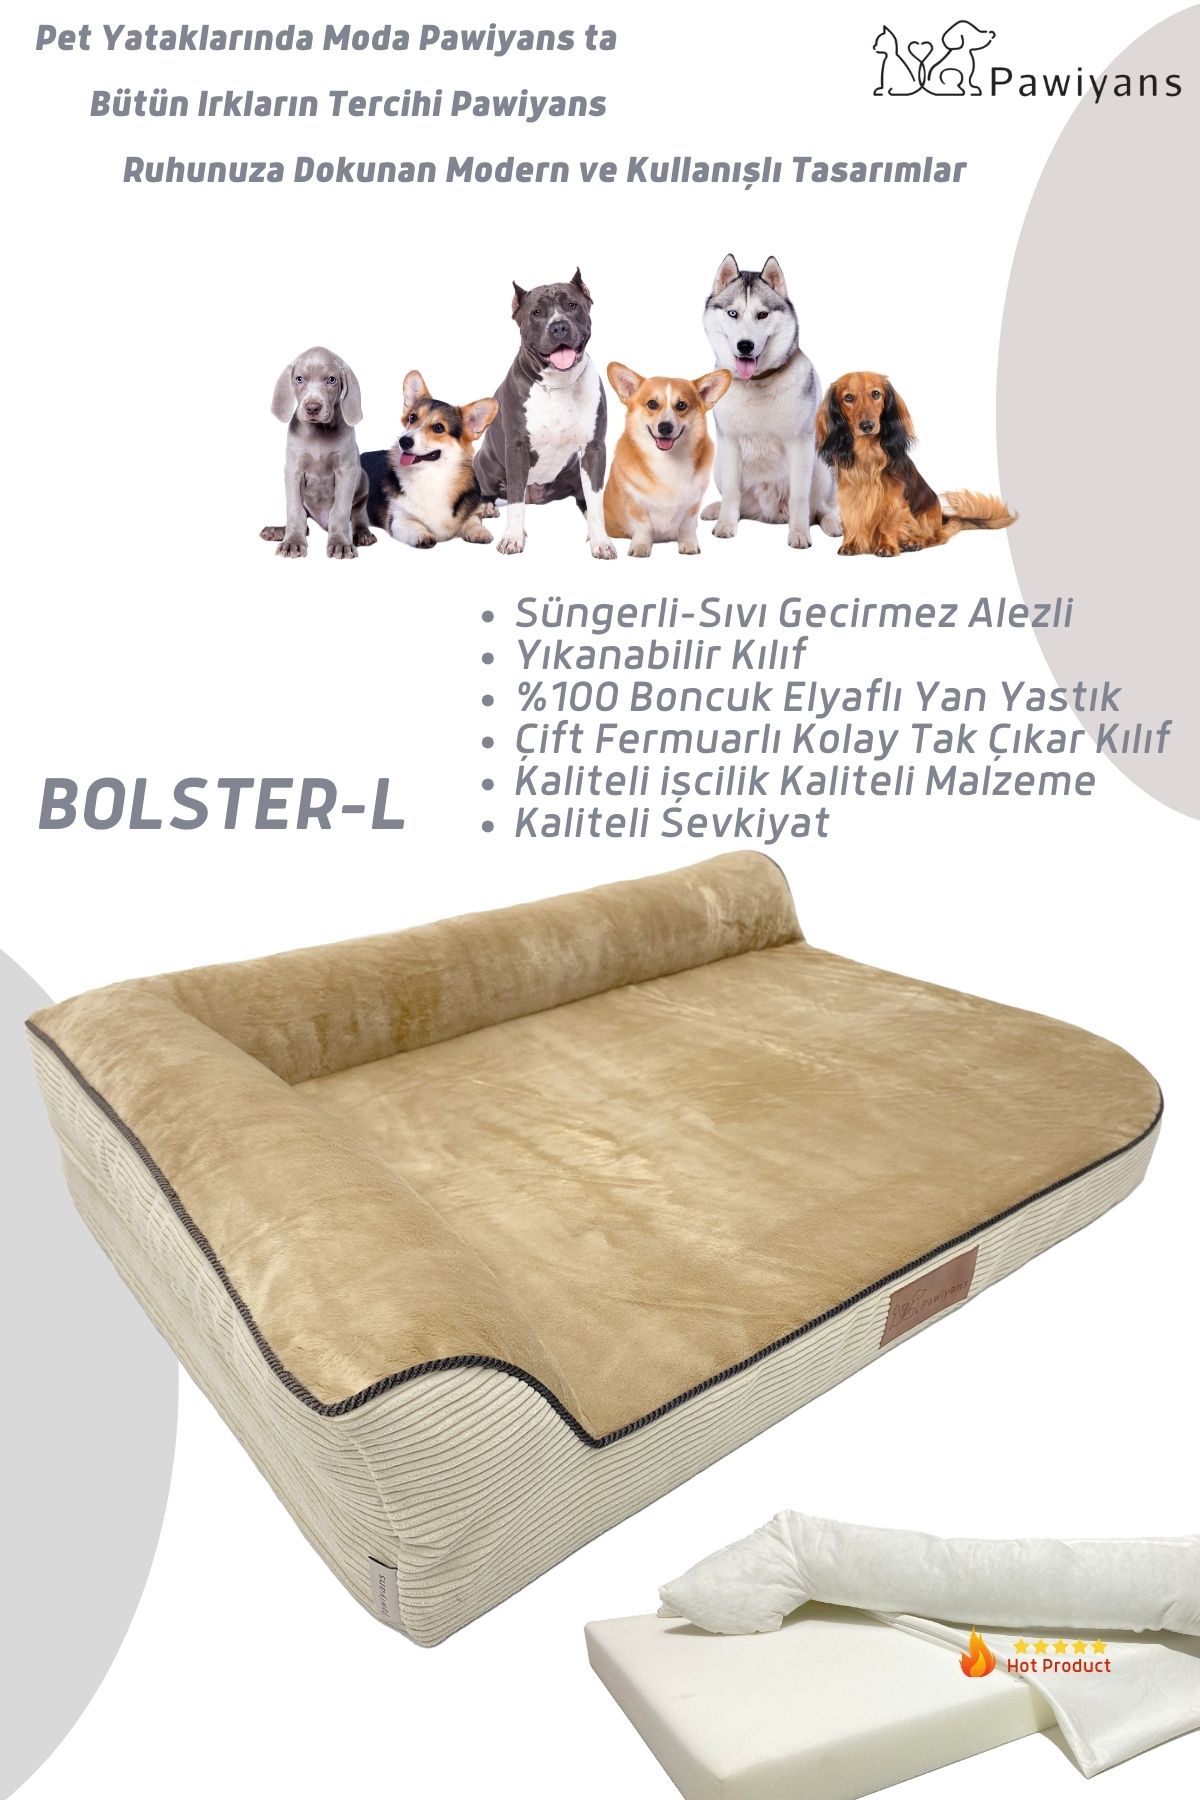 PAWİYANS Bolster-L Üst Kalite Köpek Yatağı Süngerli Sıvı Geçirmez Alezli. %100 Elyaflı. 2 Fermuarlı